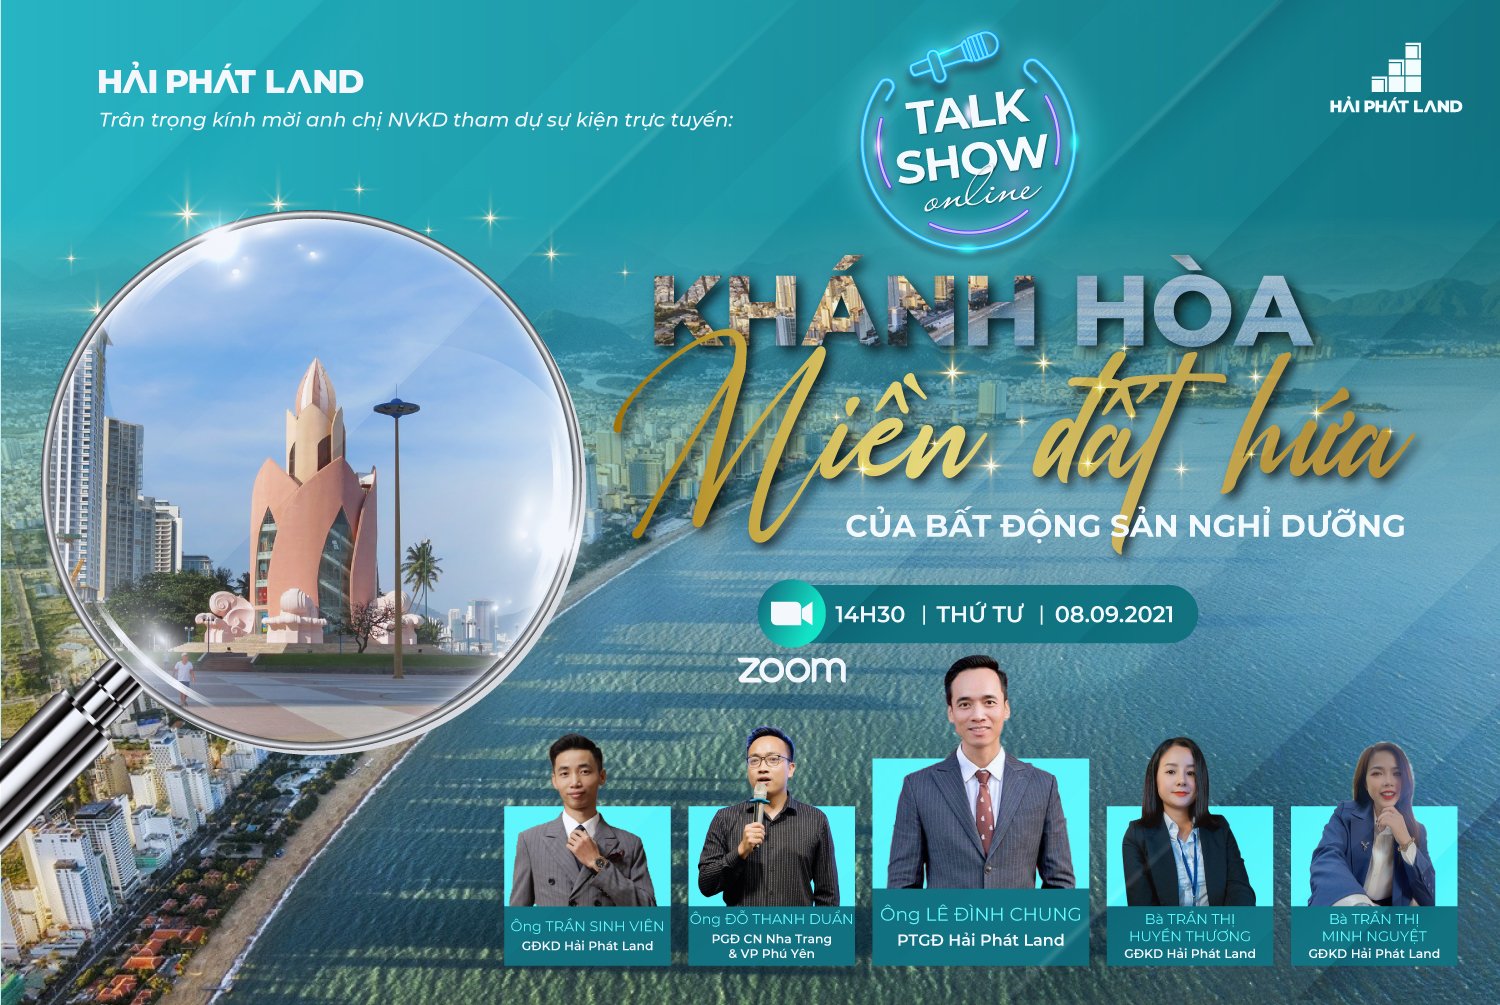 Talkshow online: Khánh Hòa - Miền đất hứa của BĐS nghỉ dưỡng